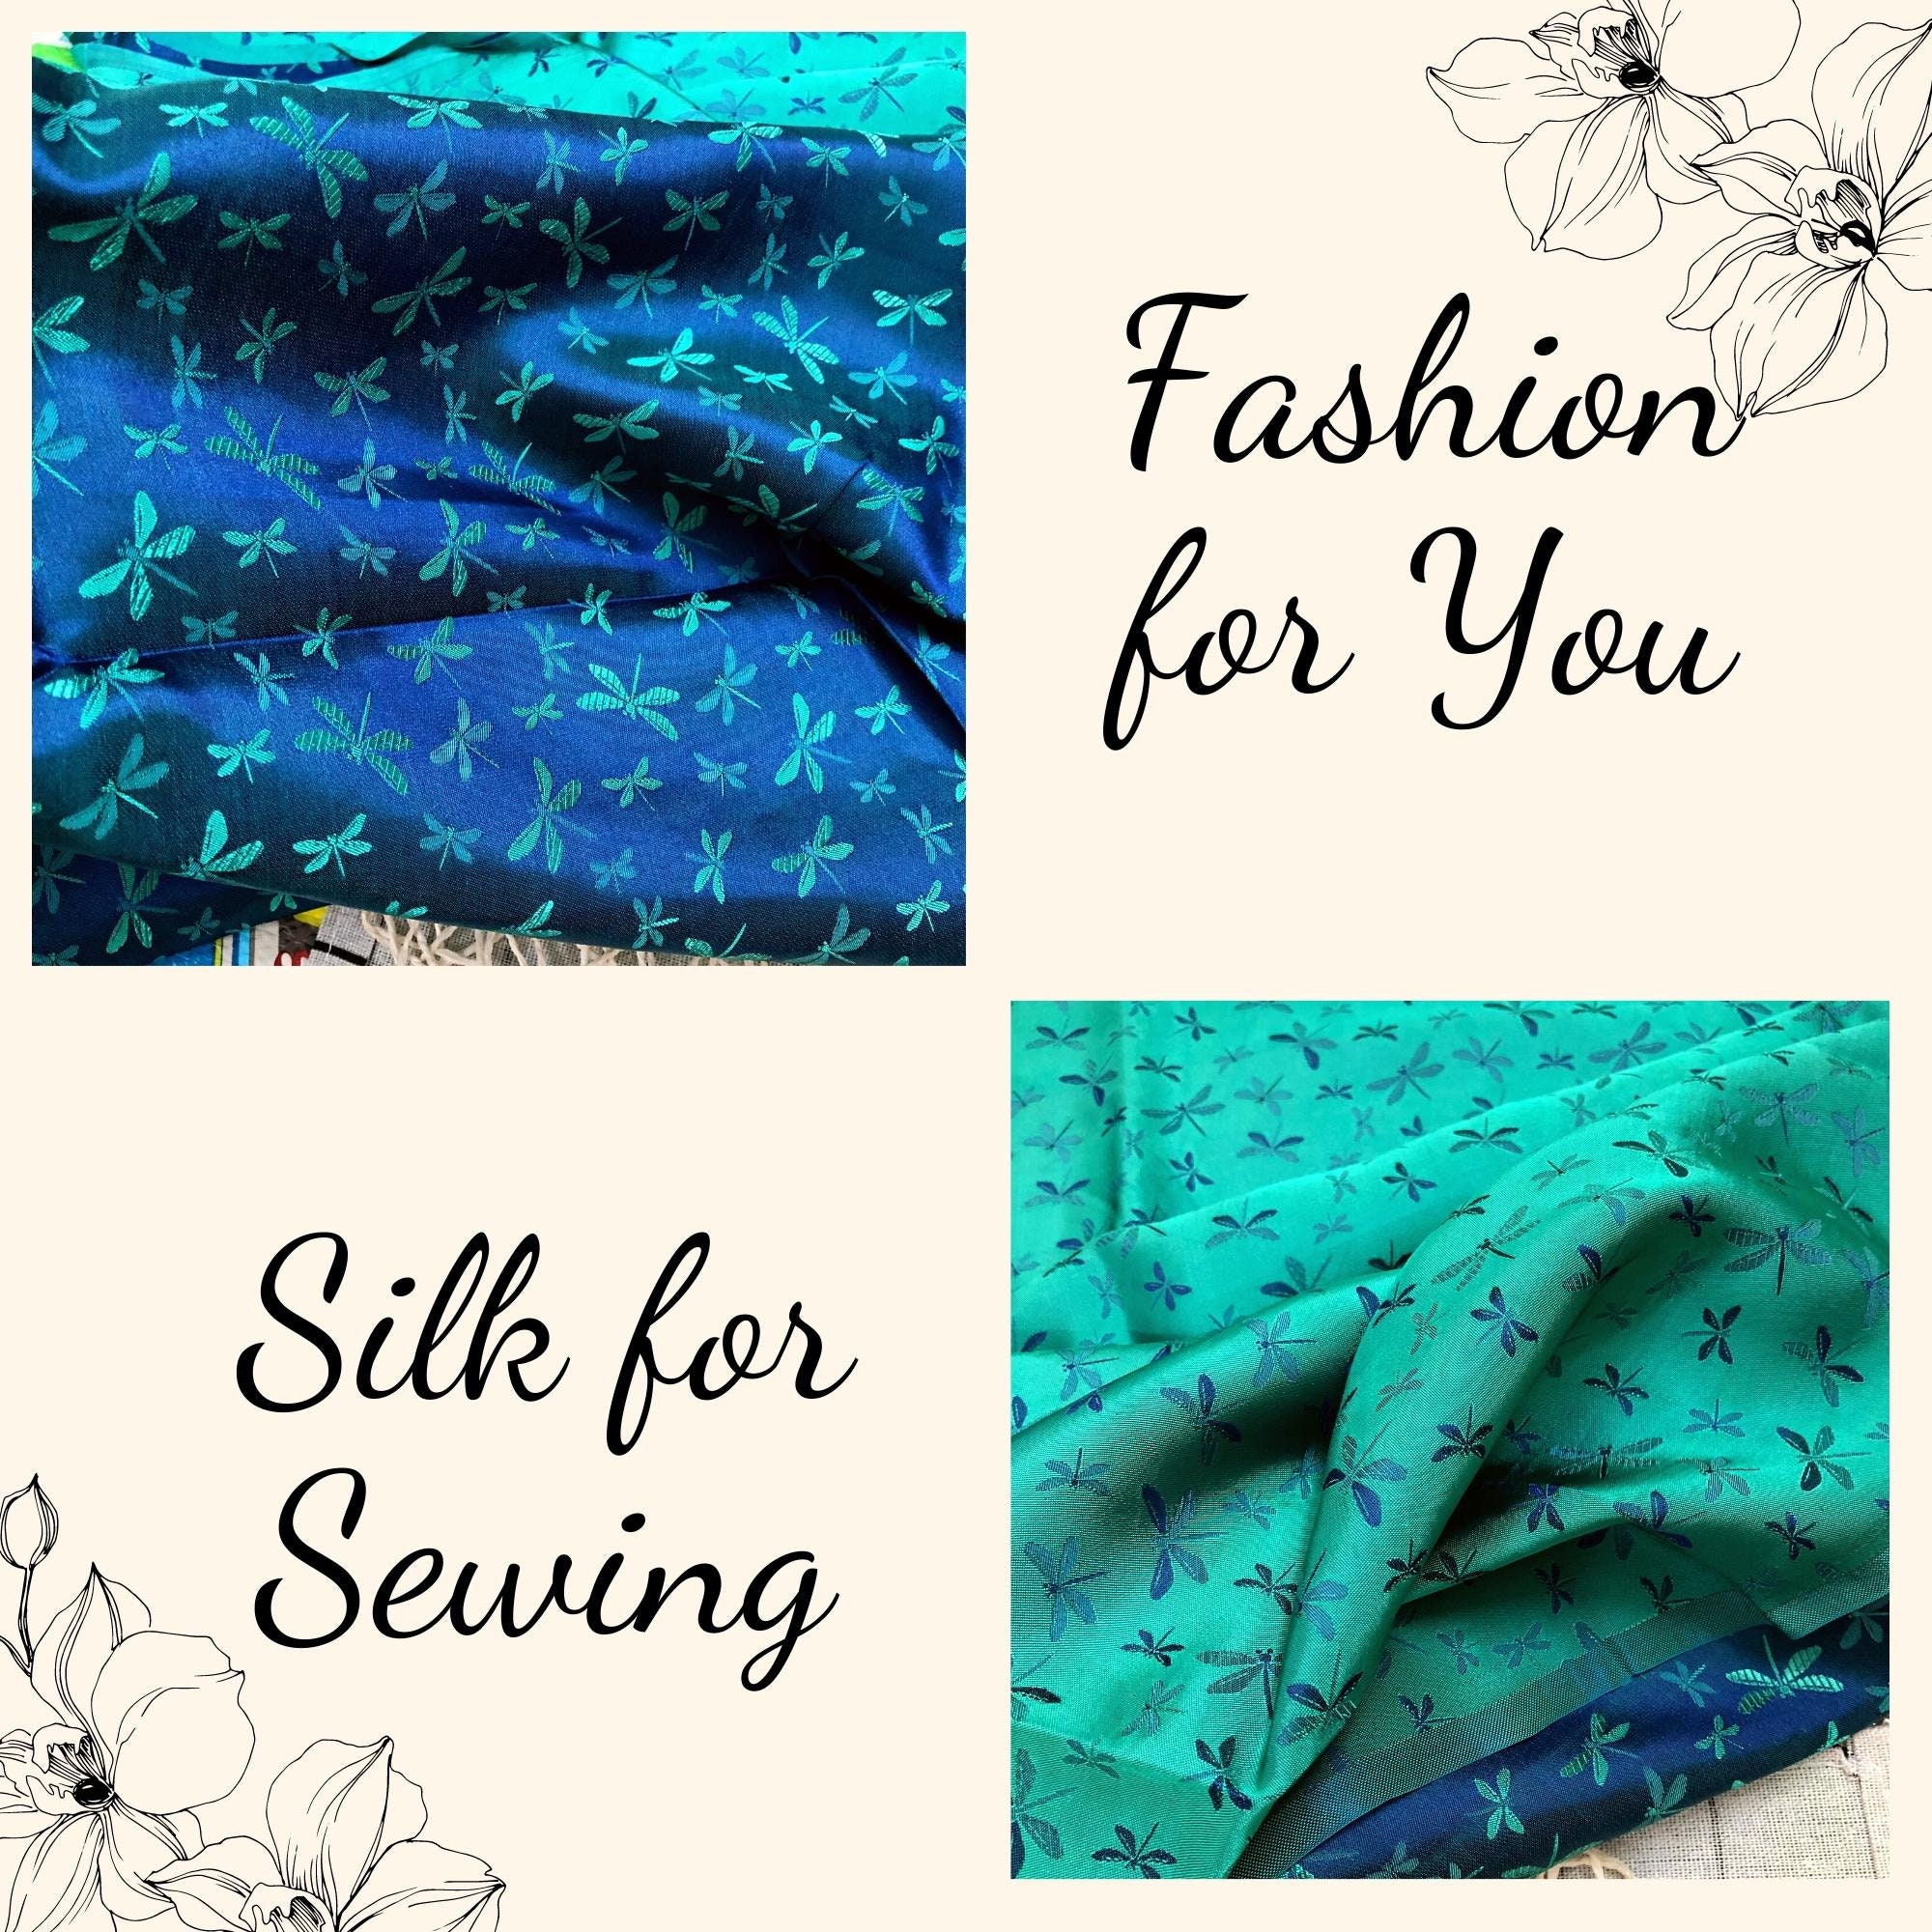 Vải Lụa Tơ Tằm hoa văn chuồn chuồn xanh cobal may áo dài, mềm#mượt#mịn, dệt thủ công, khổ vải 90cm